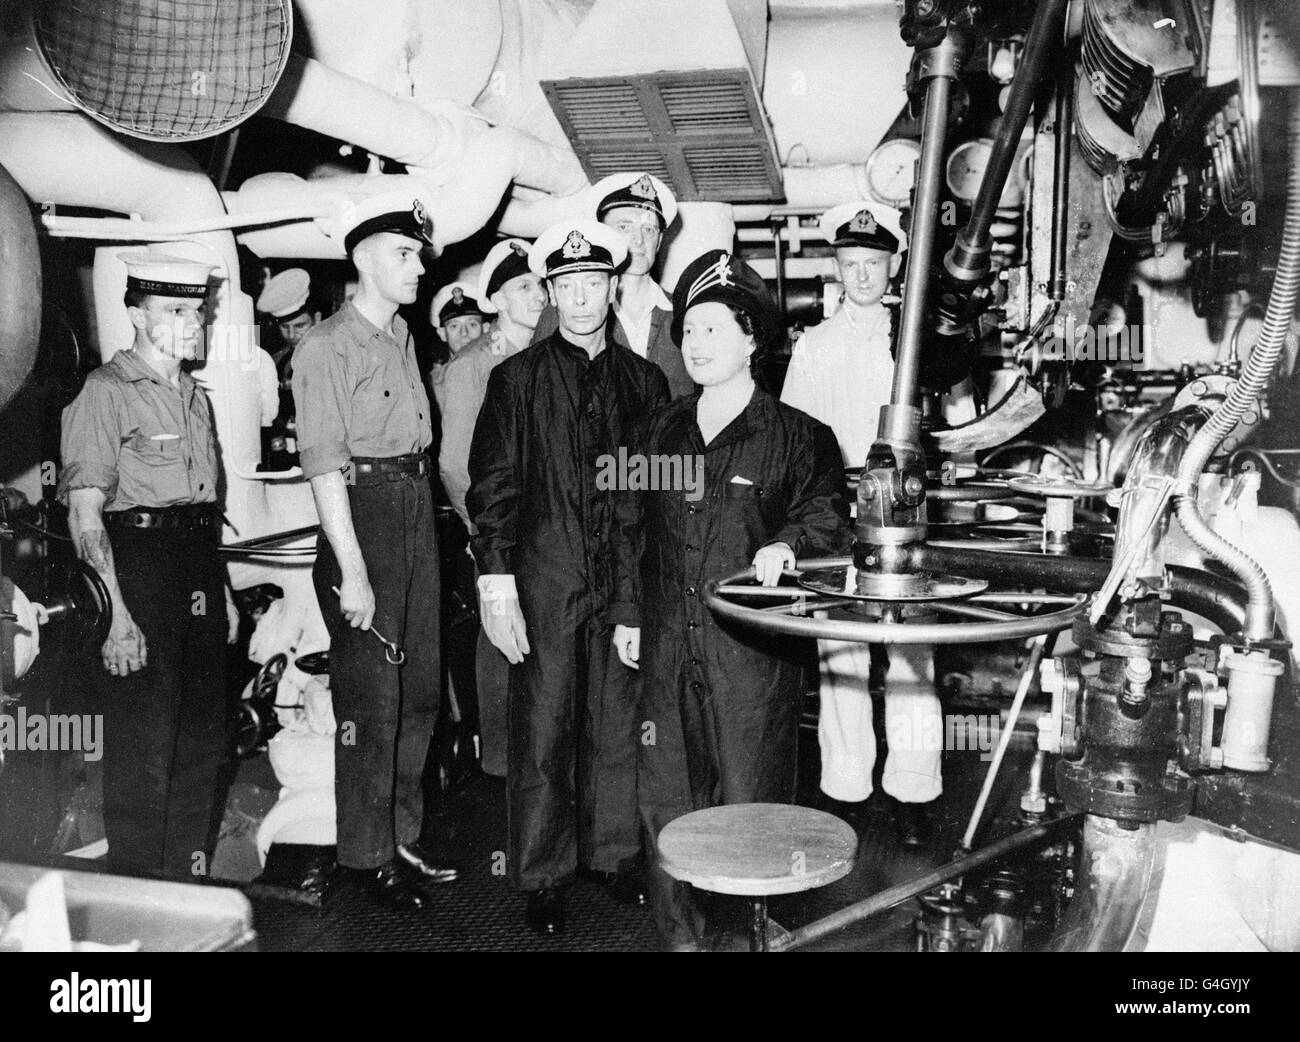 El rey George VI y la reina Elizabeth, con trajes de caldera, recorrieron las salas de motores y calderas del HMS Vanguard Foto de stock